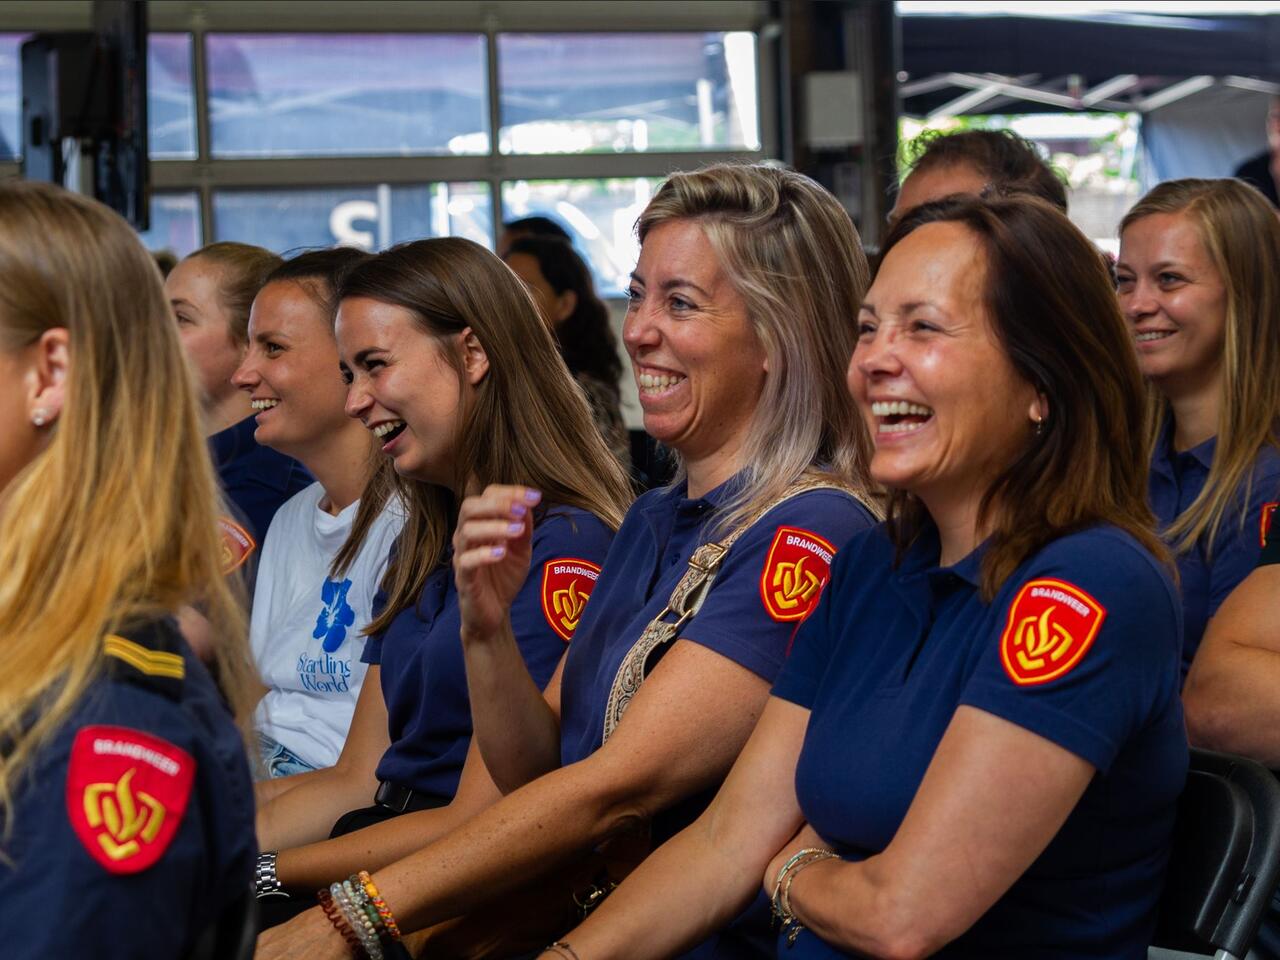 Lachende groep brandweervrouwen op een congres